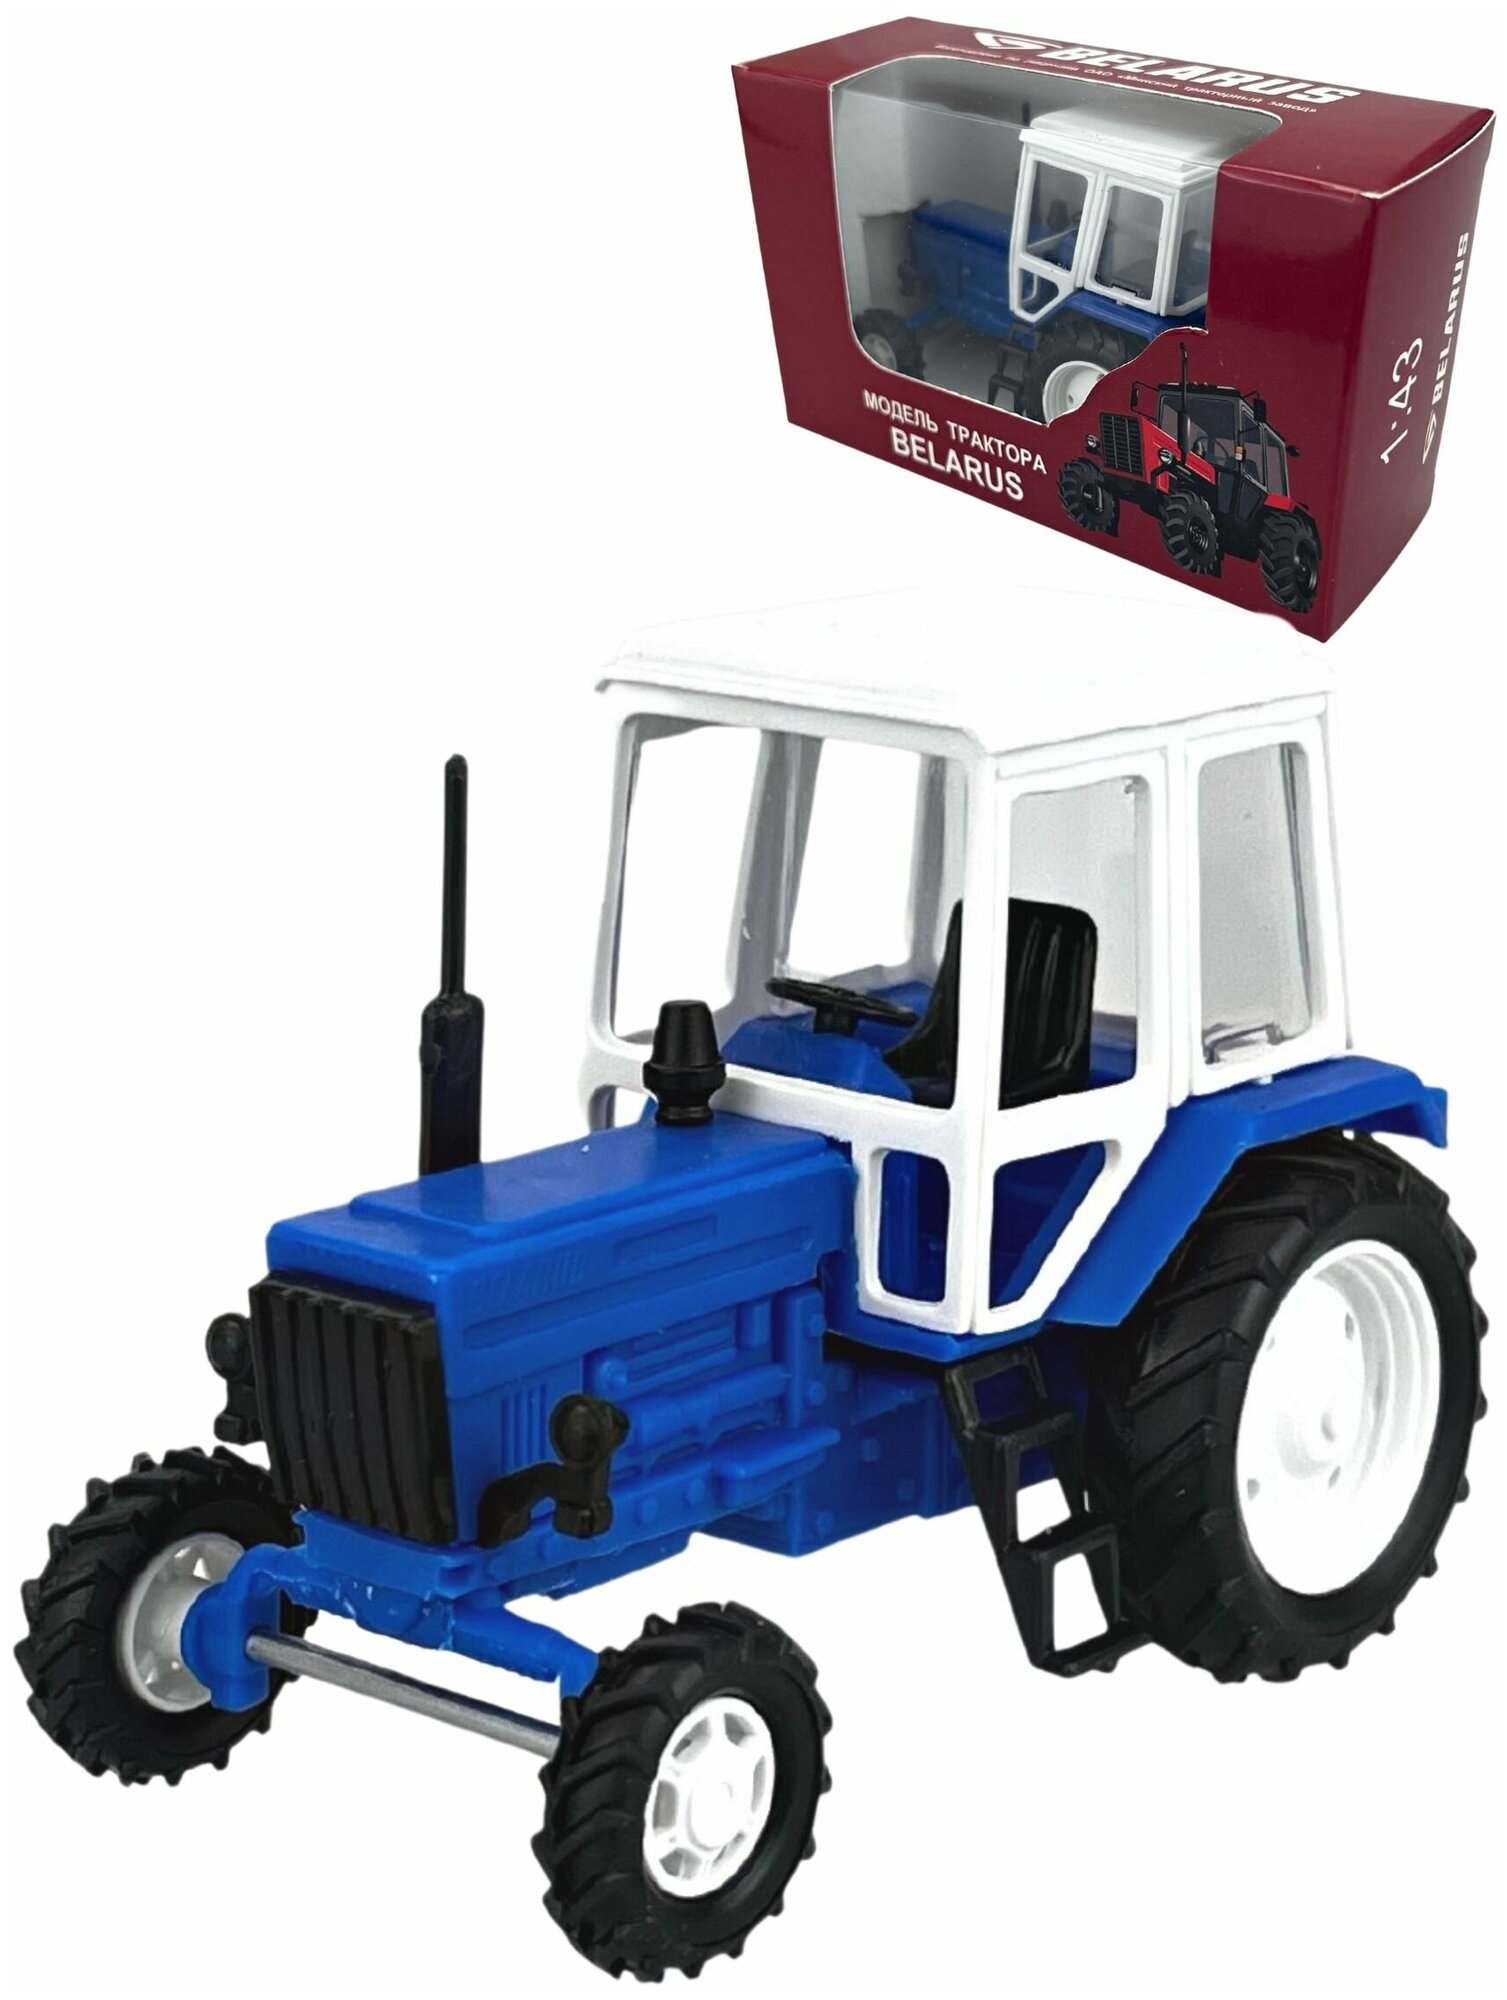 Коллекционная модель, Трактор МТЗ-82, Машинка детская, синий, металлический, пластмассовая кабина, масштаб 1/43, размер -9 х 4,5 х 6,5 см.